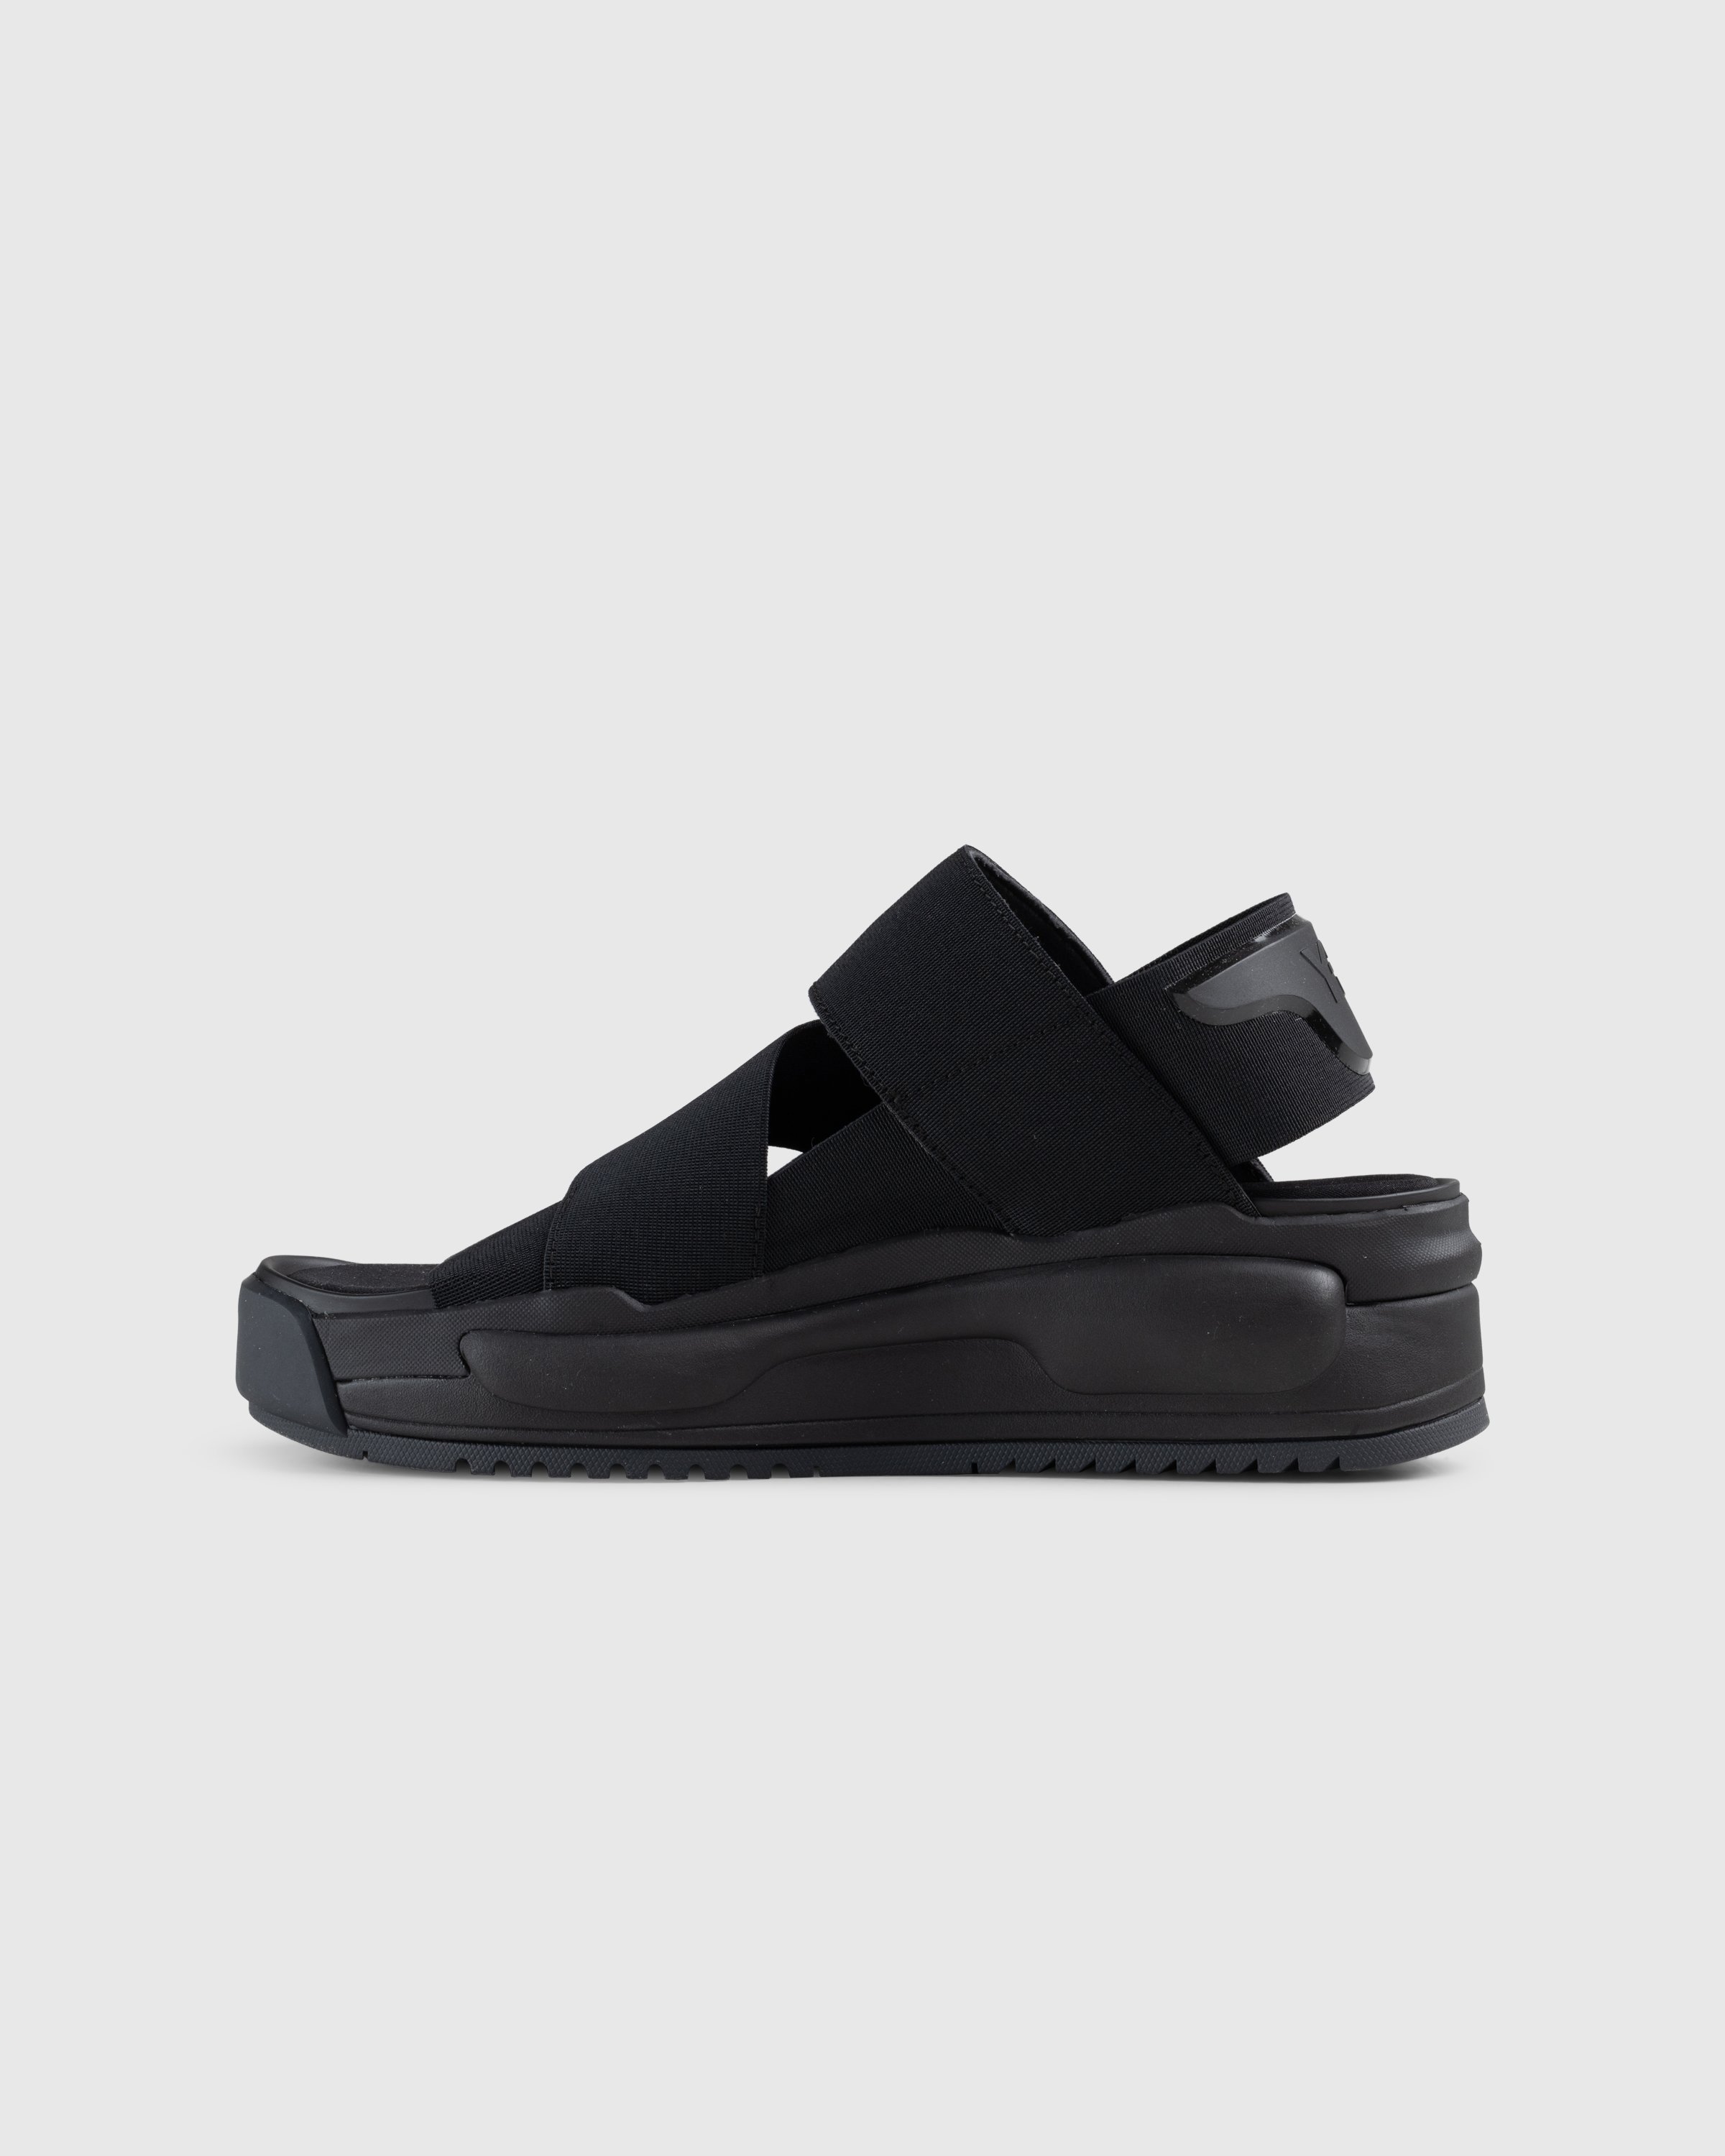 Y-3 - Y-3 Rivalry Sandal Black - Footwear - Black - Image 2